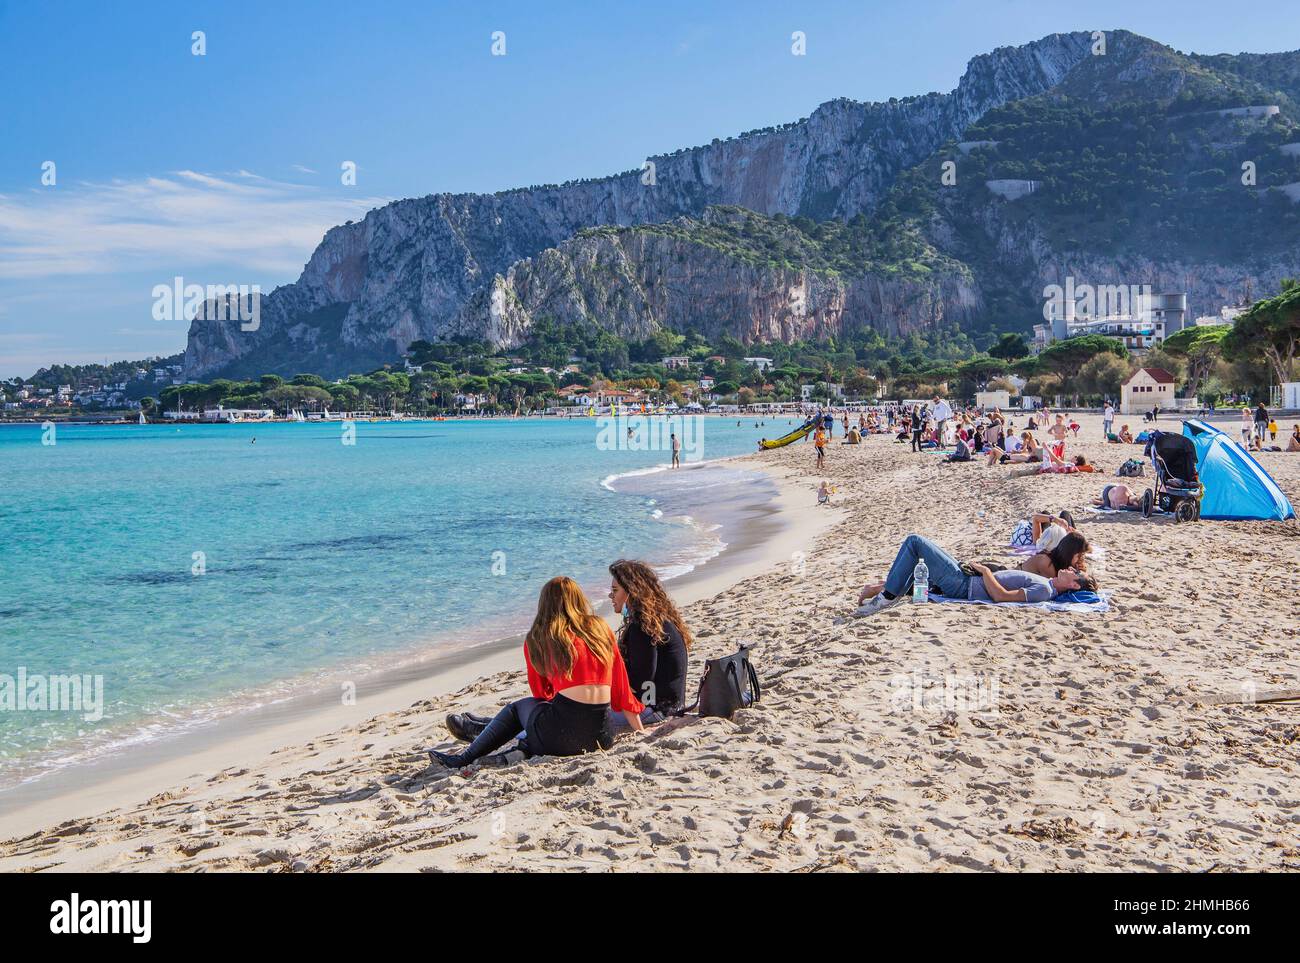 Playa de baño frente al Monte Pellegrino en la localidad costera de Mondello, distrito de Palermo, Sicilia, Italia Foto de stock